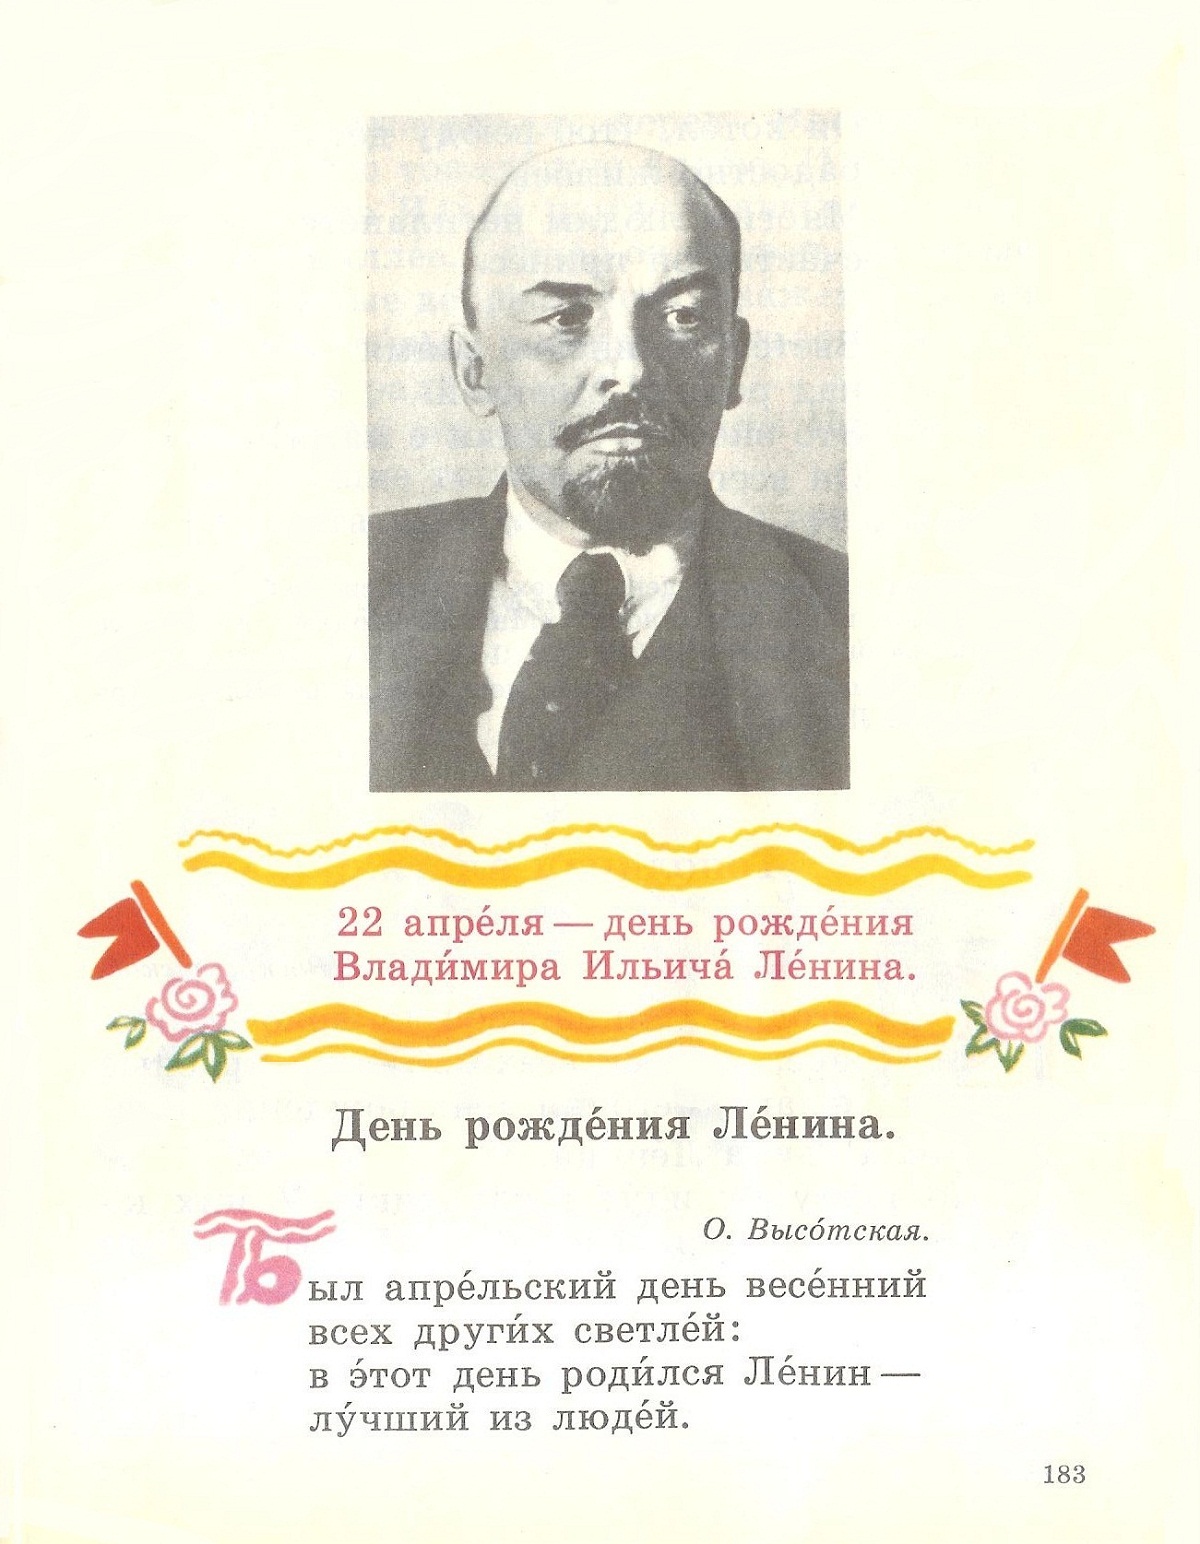 21 апреля день рождения ленина. 22 Апреля день рождения Владимира Ильича Ленина. 22 Апреля день рождения Ленина стихи. 22 Апреля родился Ленин открытки.